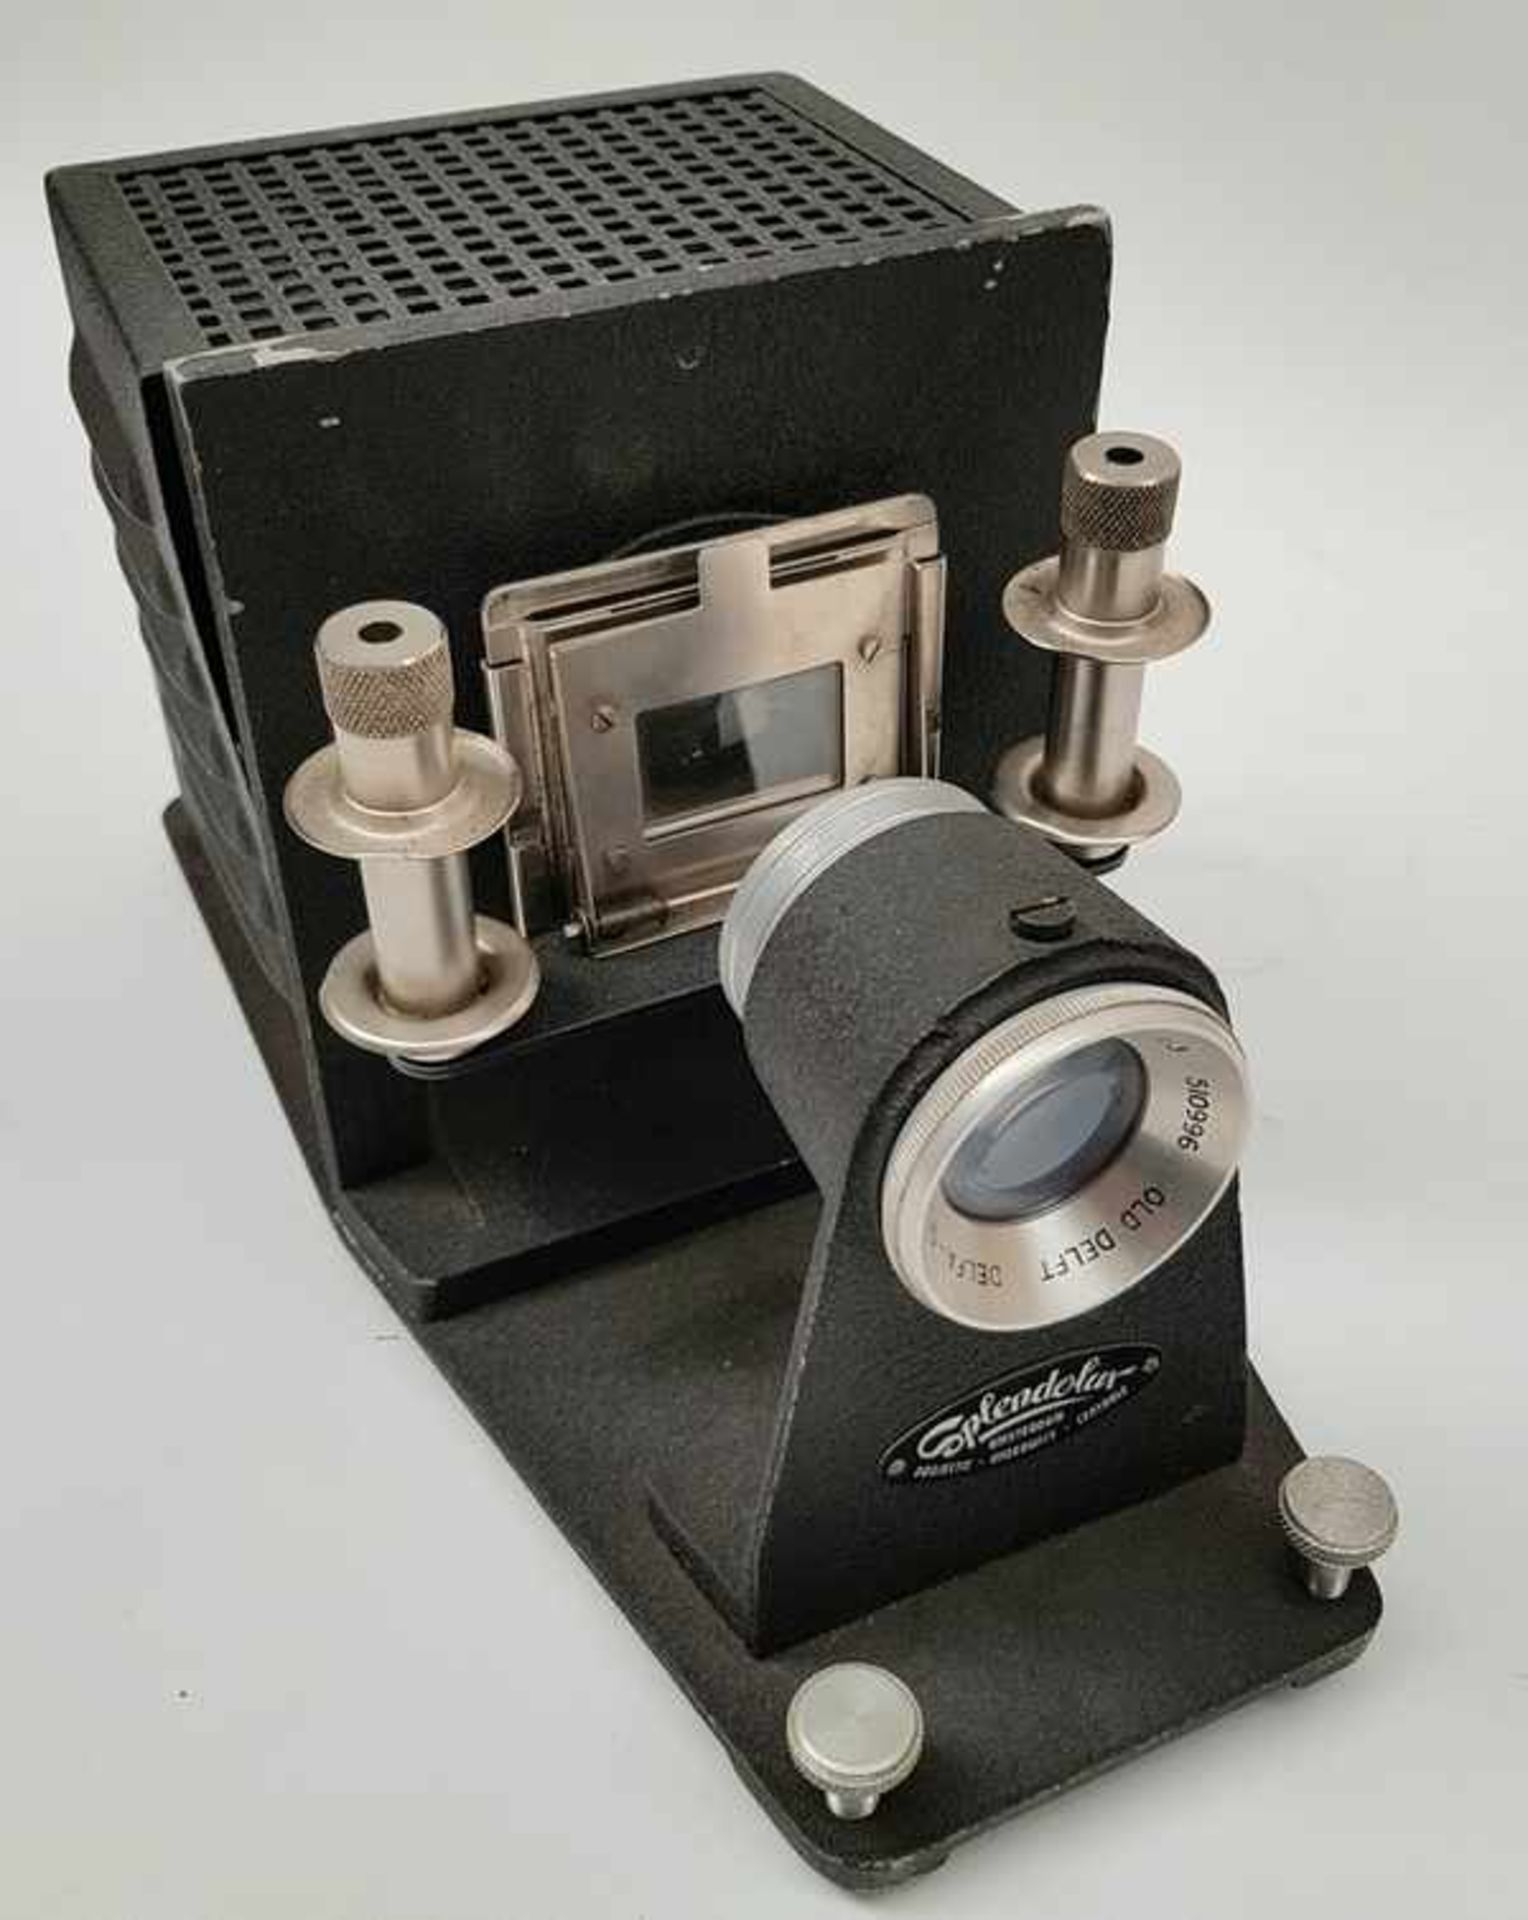 (Curiosa) Splendolux diaprojector in kofferSplendolux Diaprojector met orginele koffer jaren '60. - Bild 2 aus 5